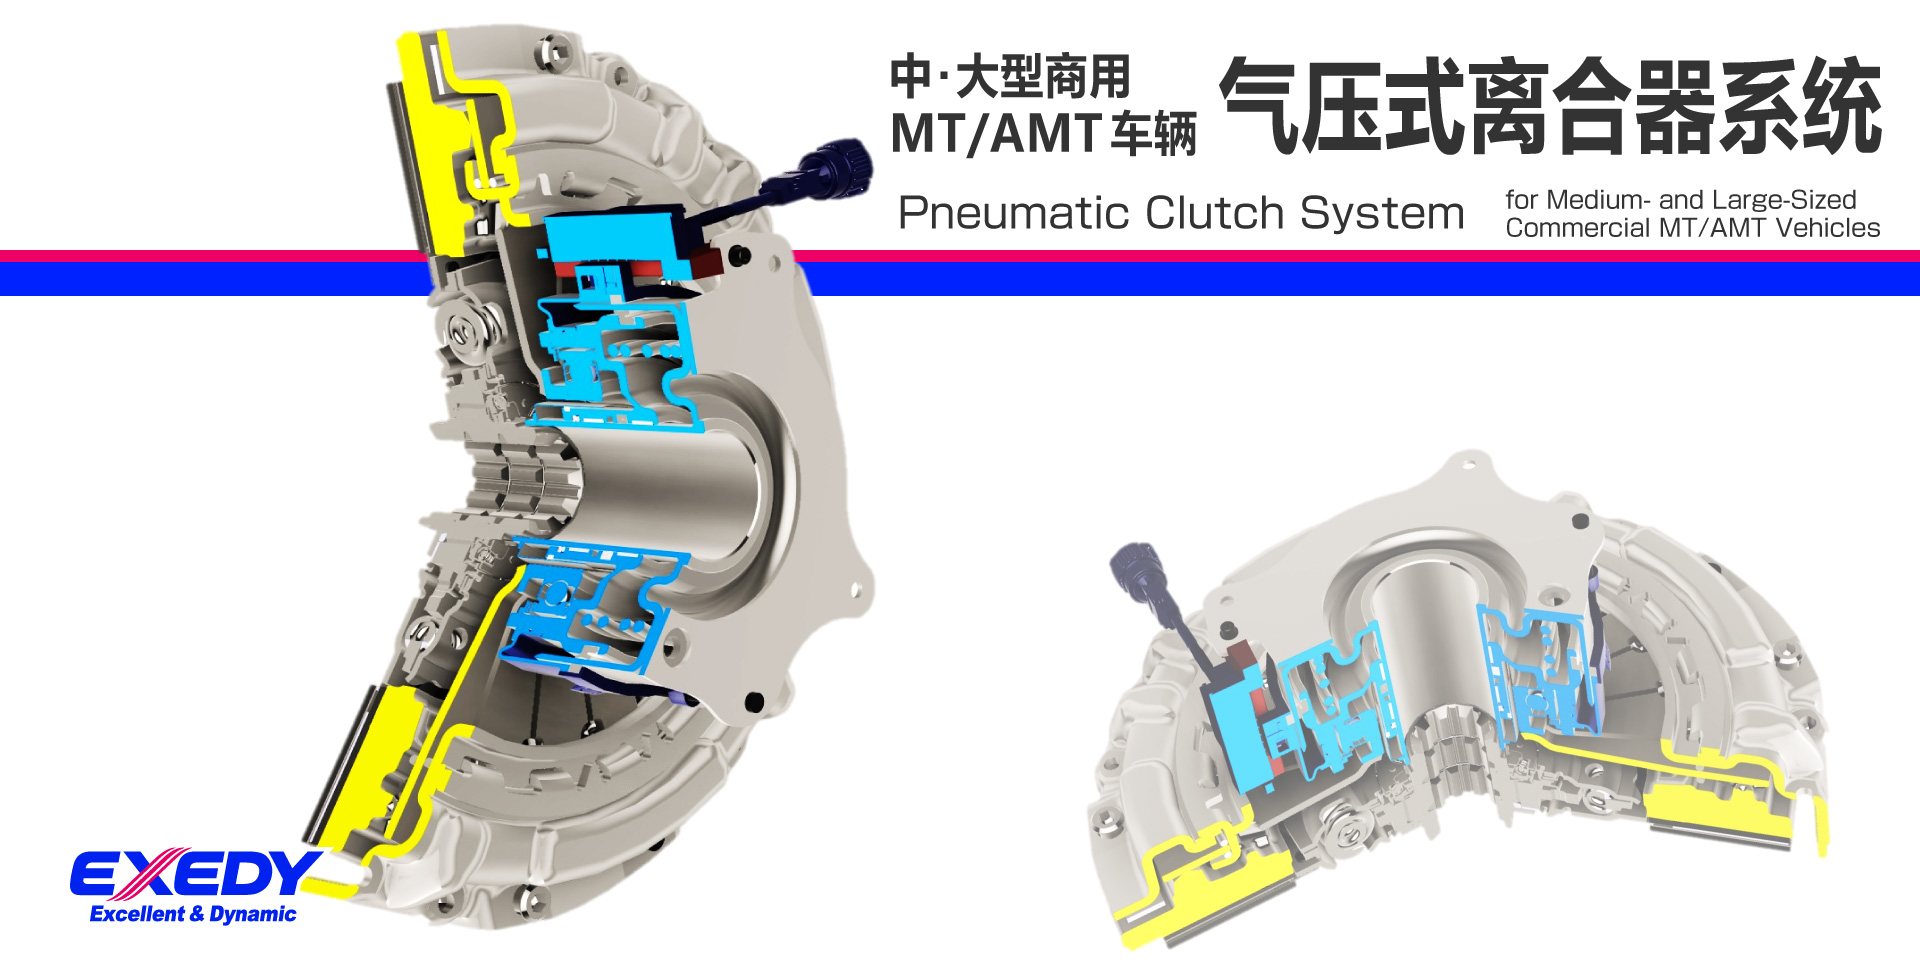 中･大型商用MT/AMT车辆 气压式离合器系统